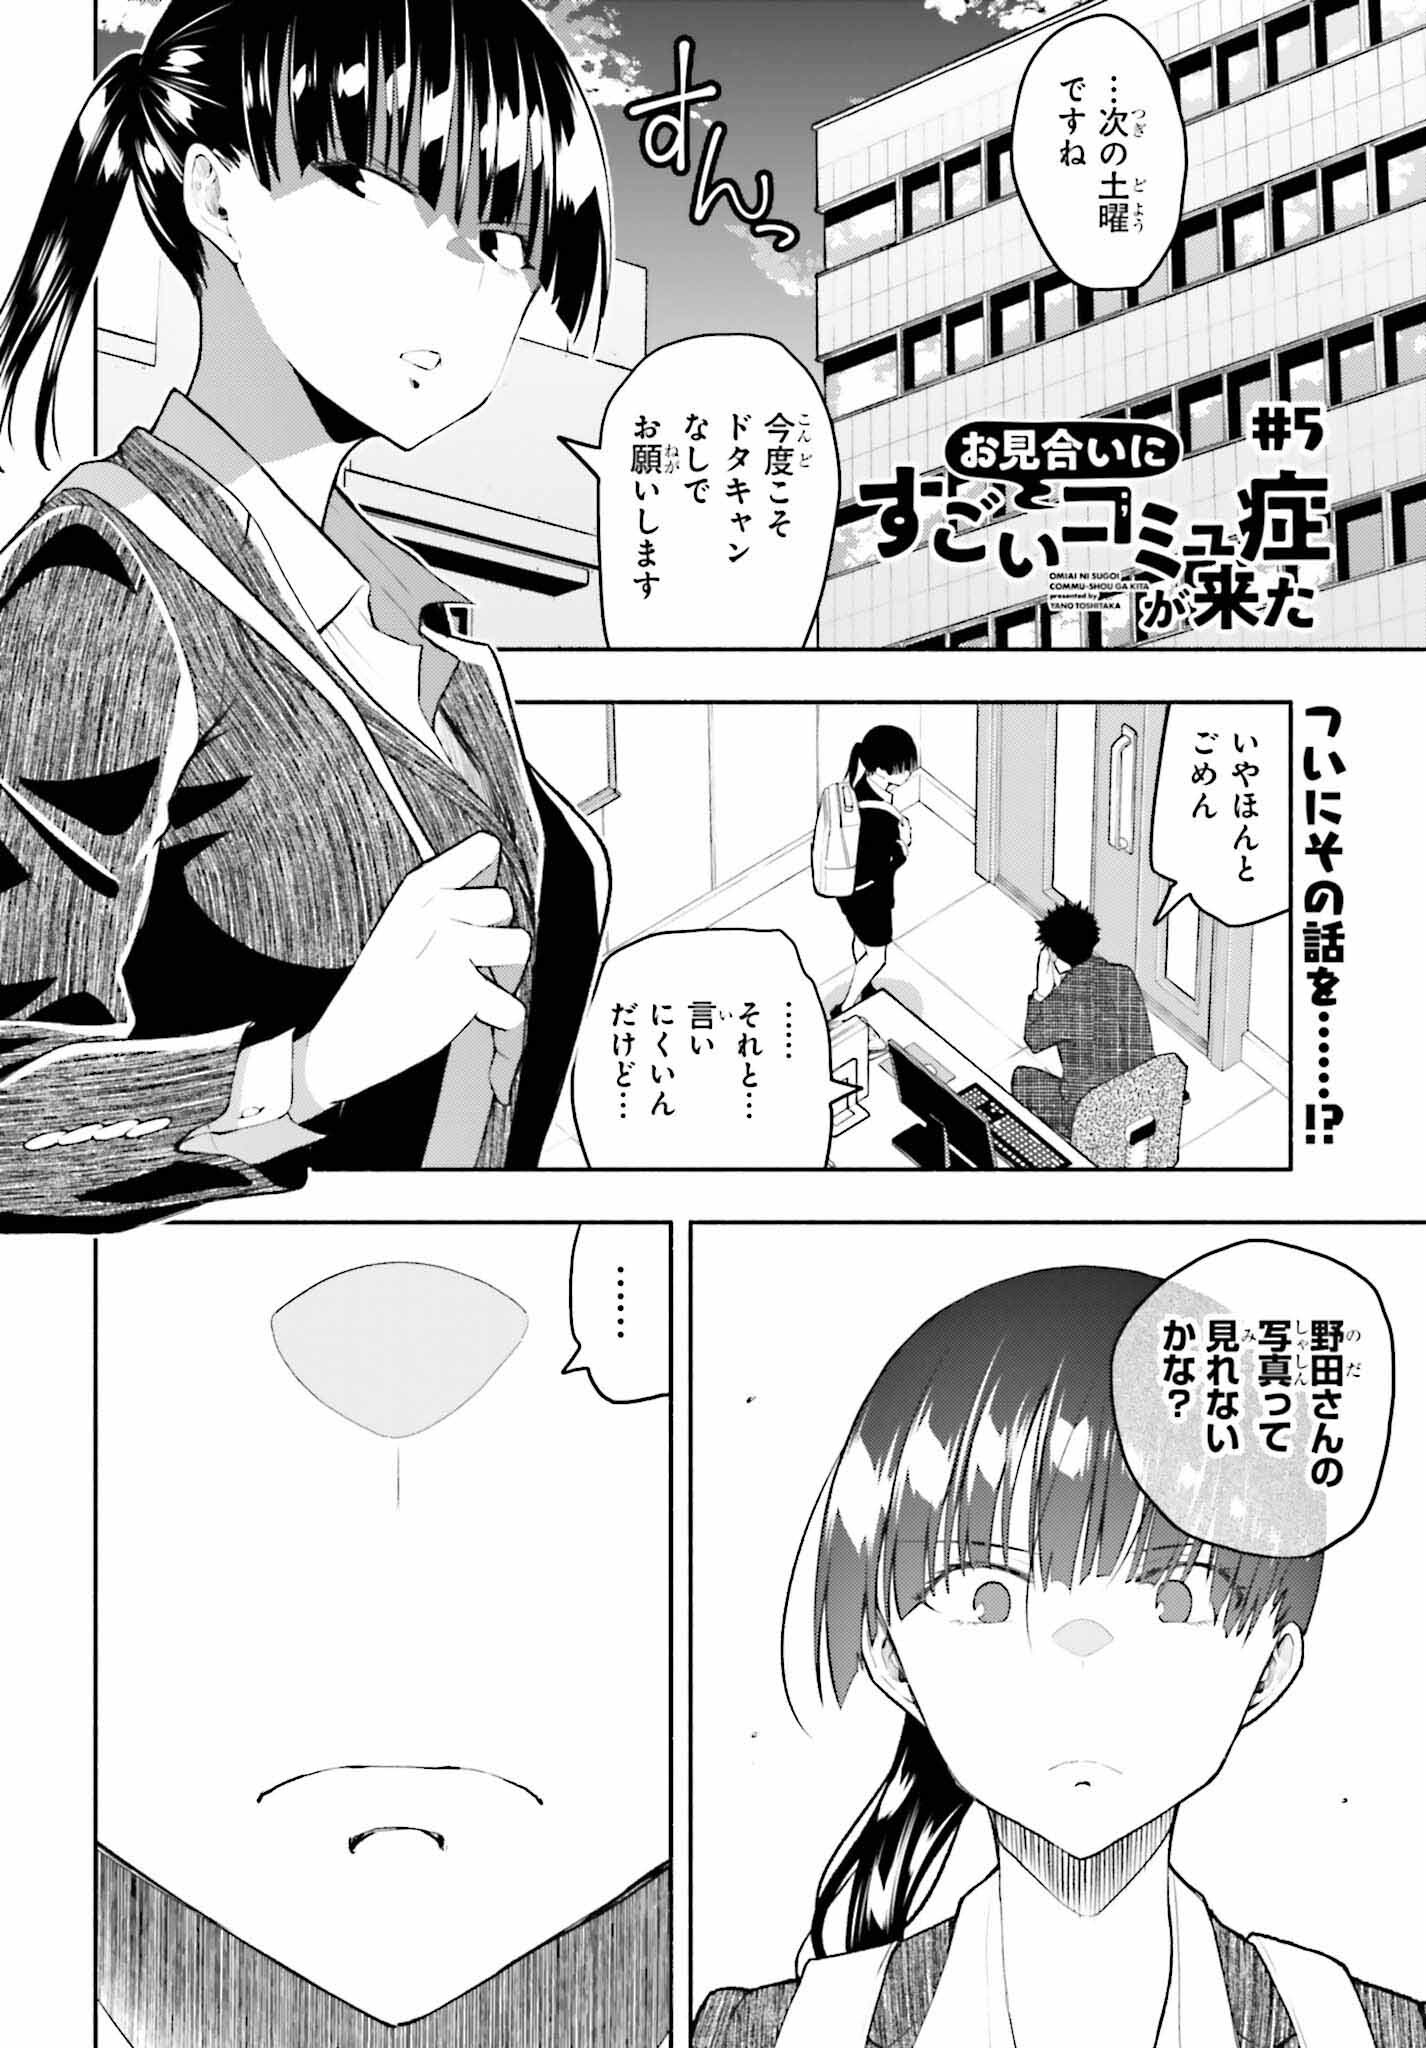 Omiai ni Sugoi Komyushou ga Kita - Chapter 5 - Page 1